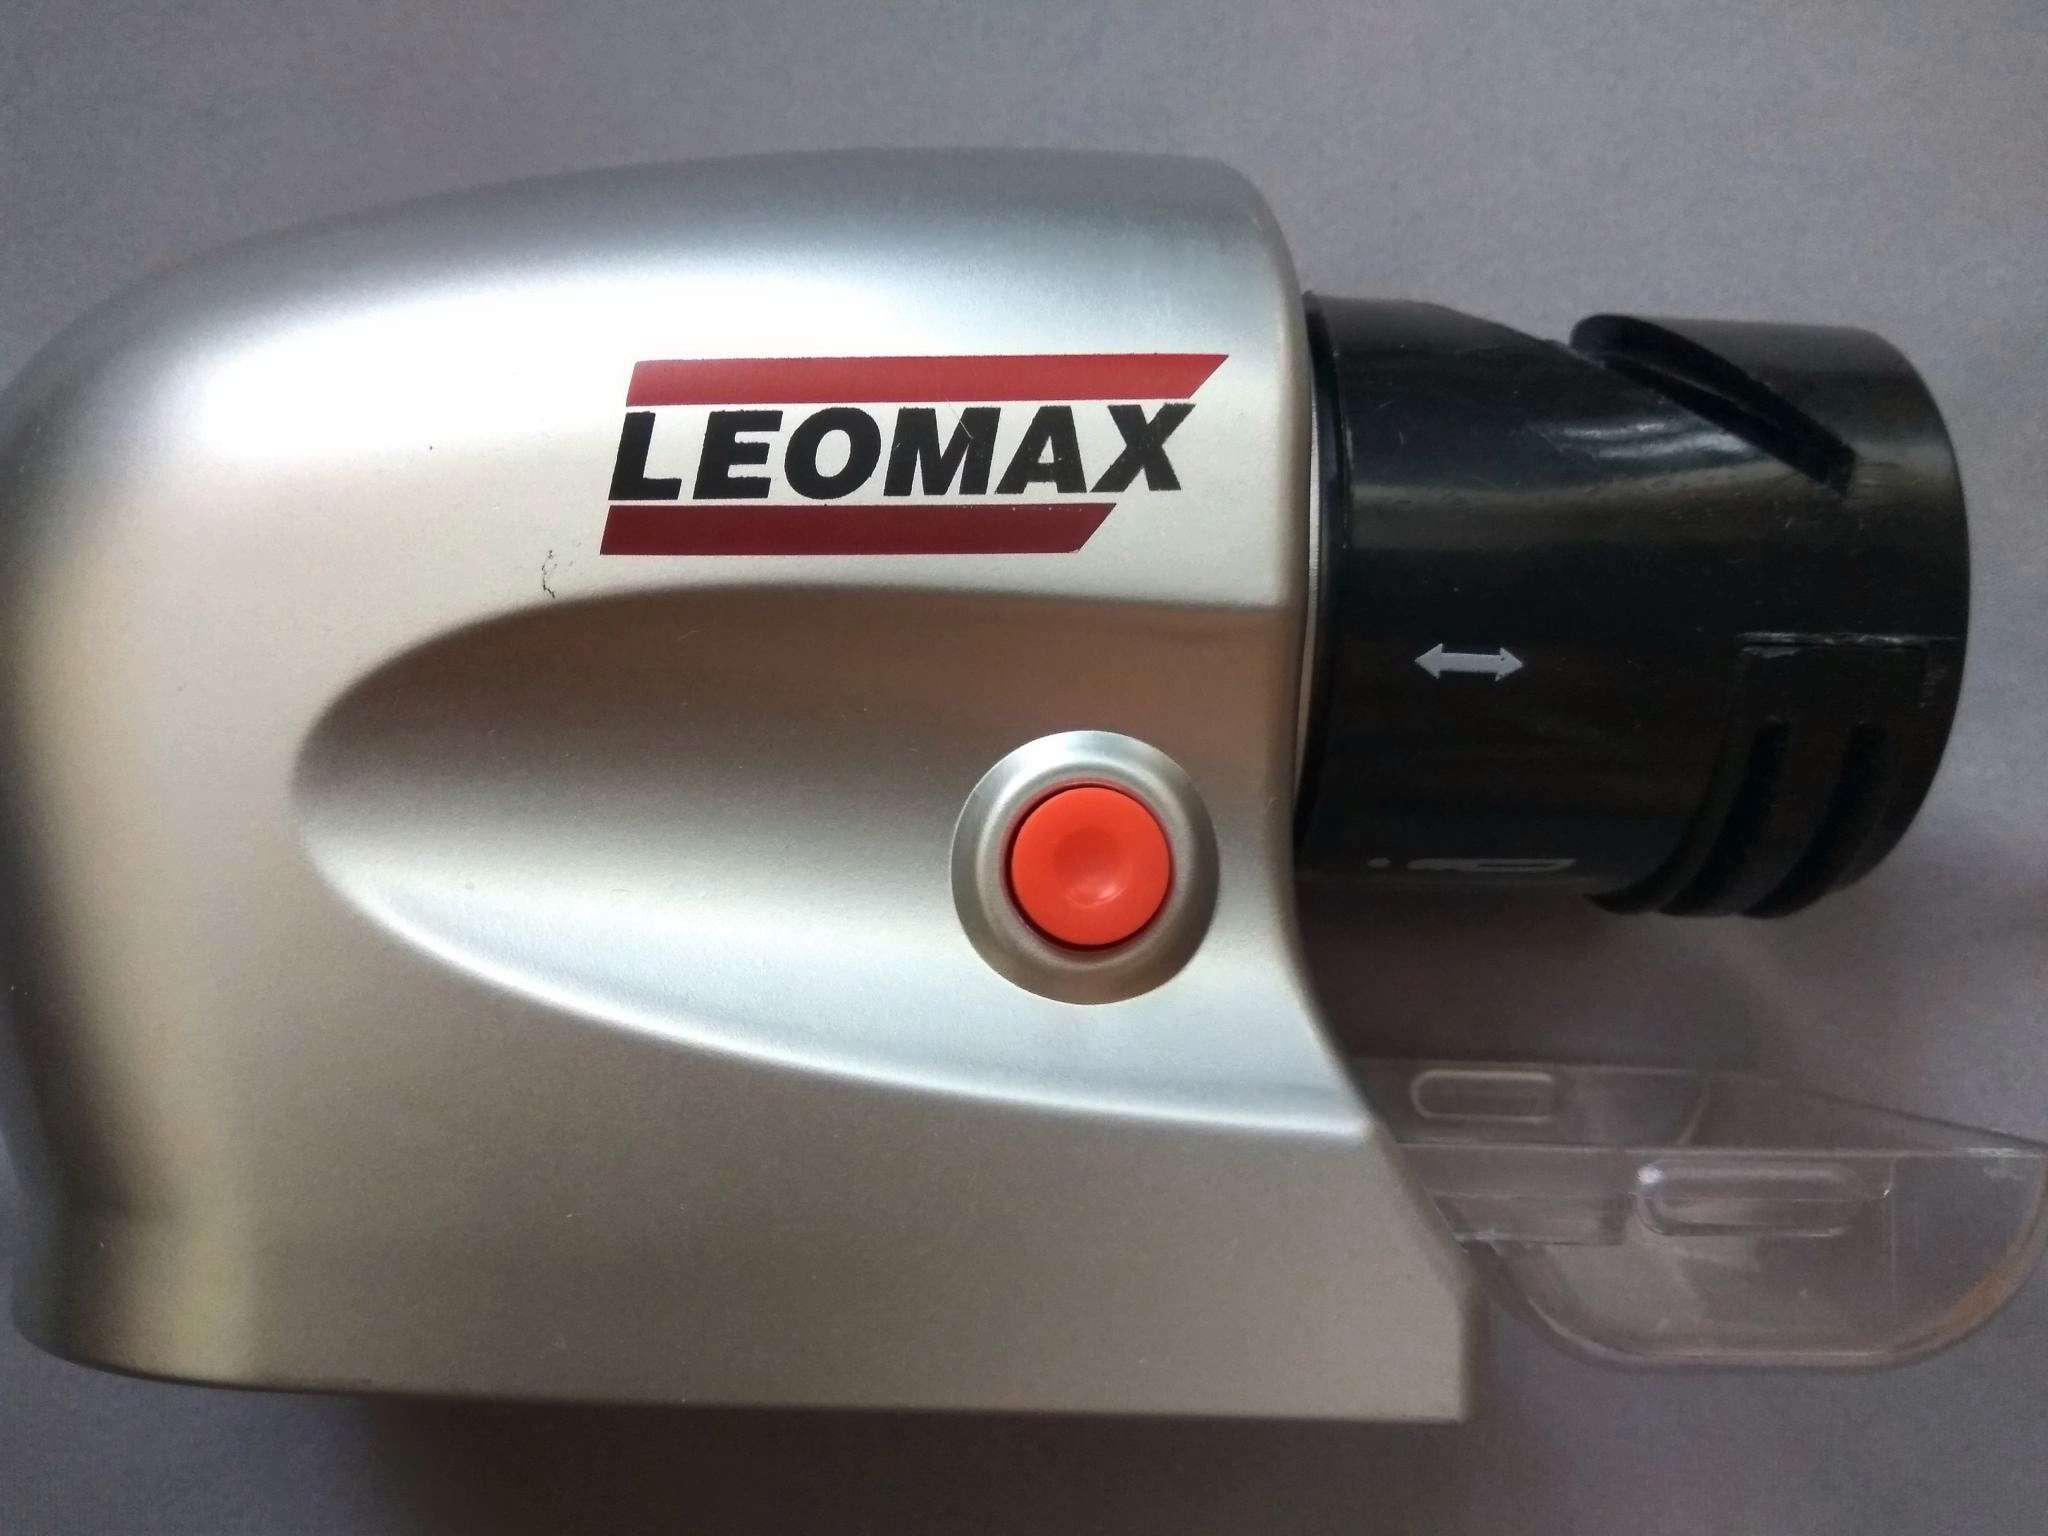 Телефон леомакс для заказа. Антикор 5 в 1 леомакс. Электрическая ножеточка leomax острые грани. Пылесос леомакс. Ножеточка леомакс острые грани.